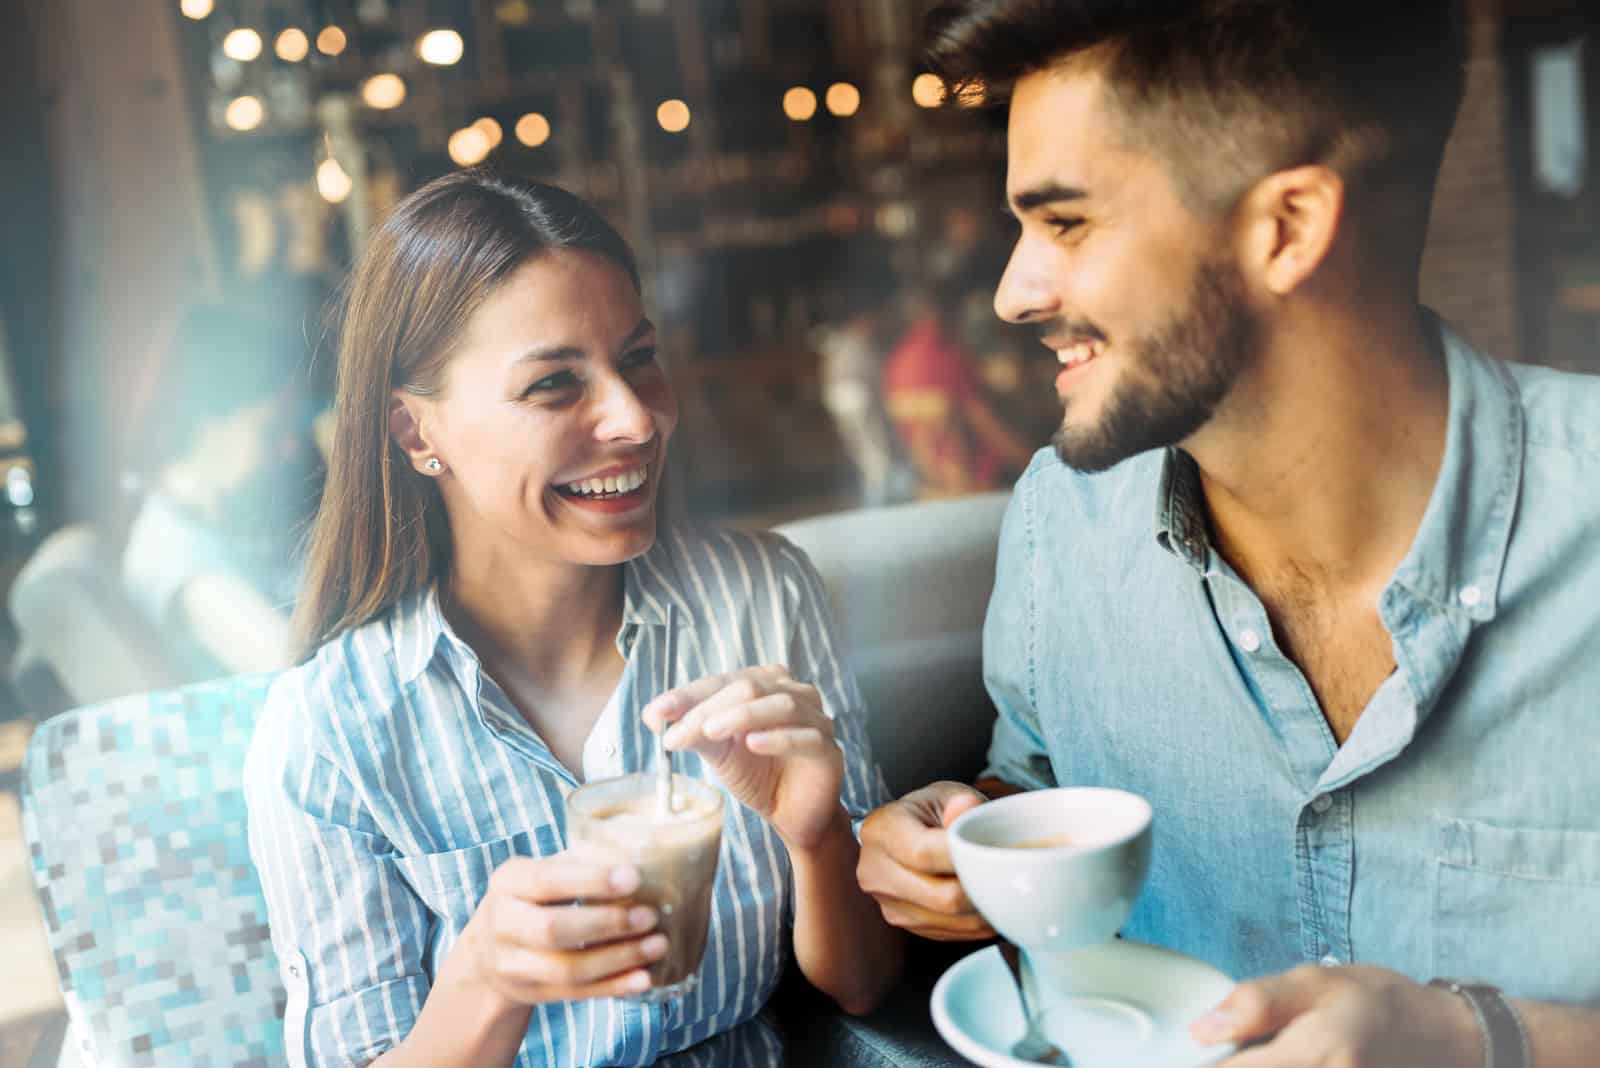 un uomo e una donna sorridenti siedono a parlare davanti a un caffè